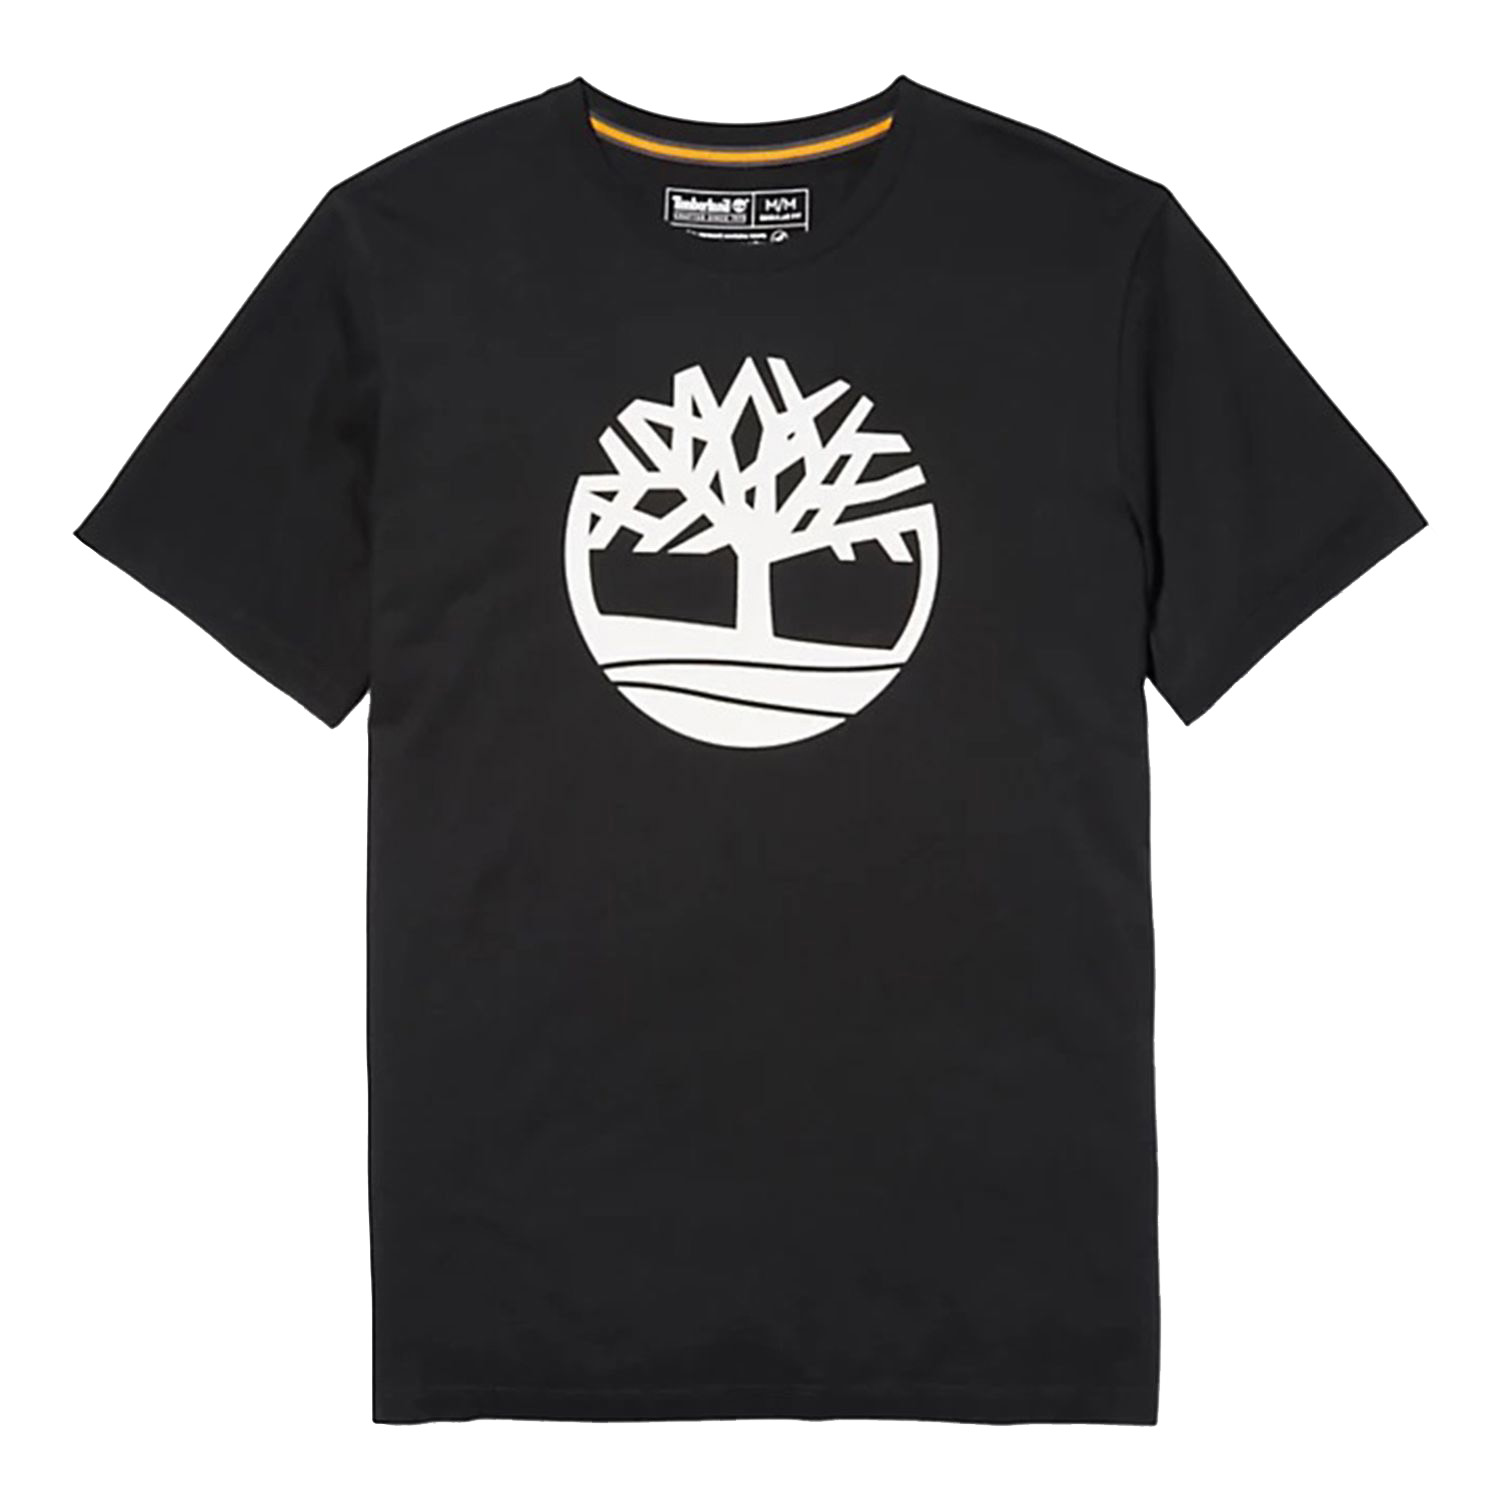 Timberland SS TREE LOGO T Herren T-Shirt Shirt TB0A2C6S schwarz